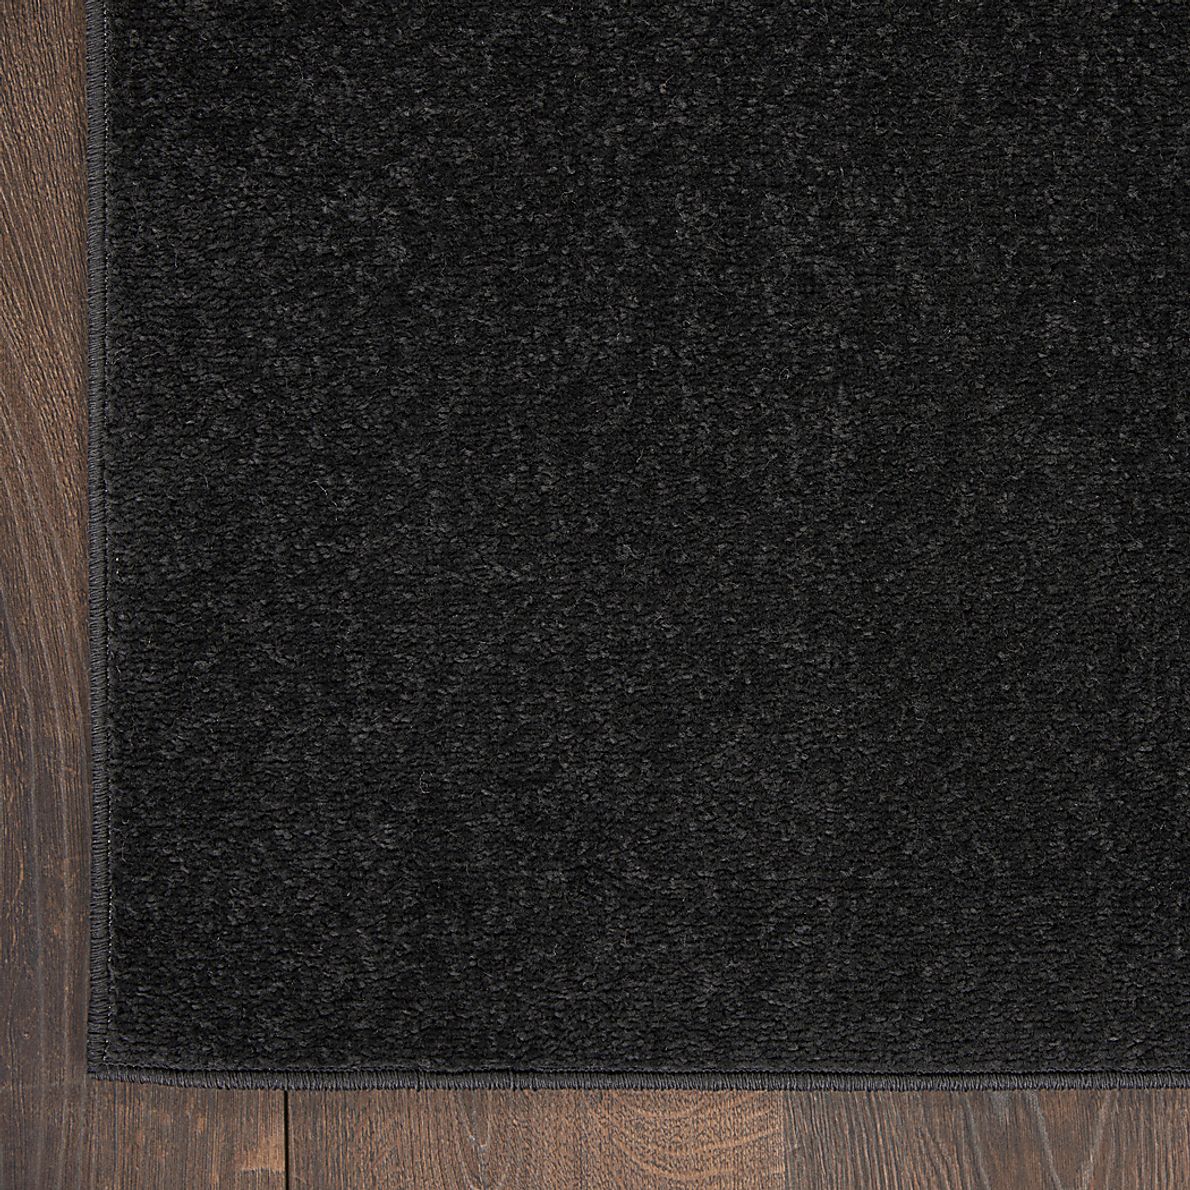 Easthagen Black 5' x 7' Indoor/Outdoor Rug